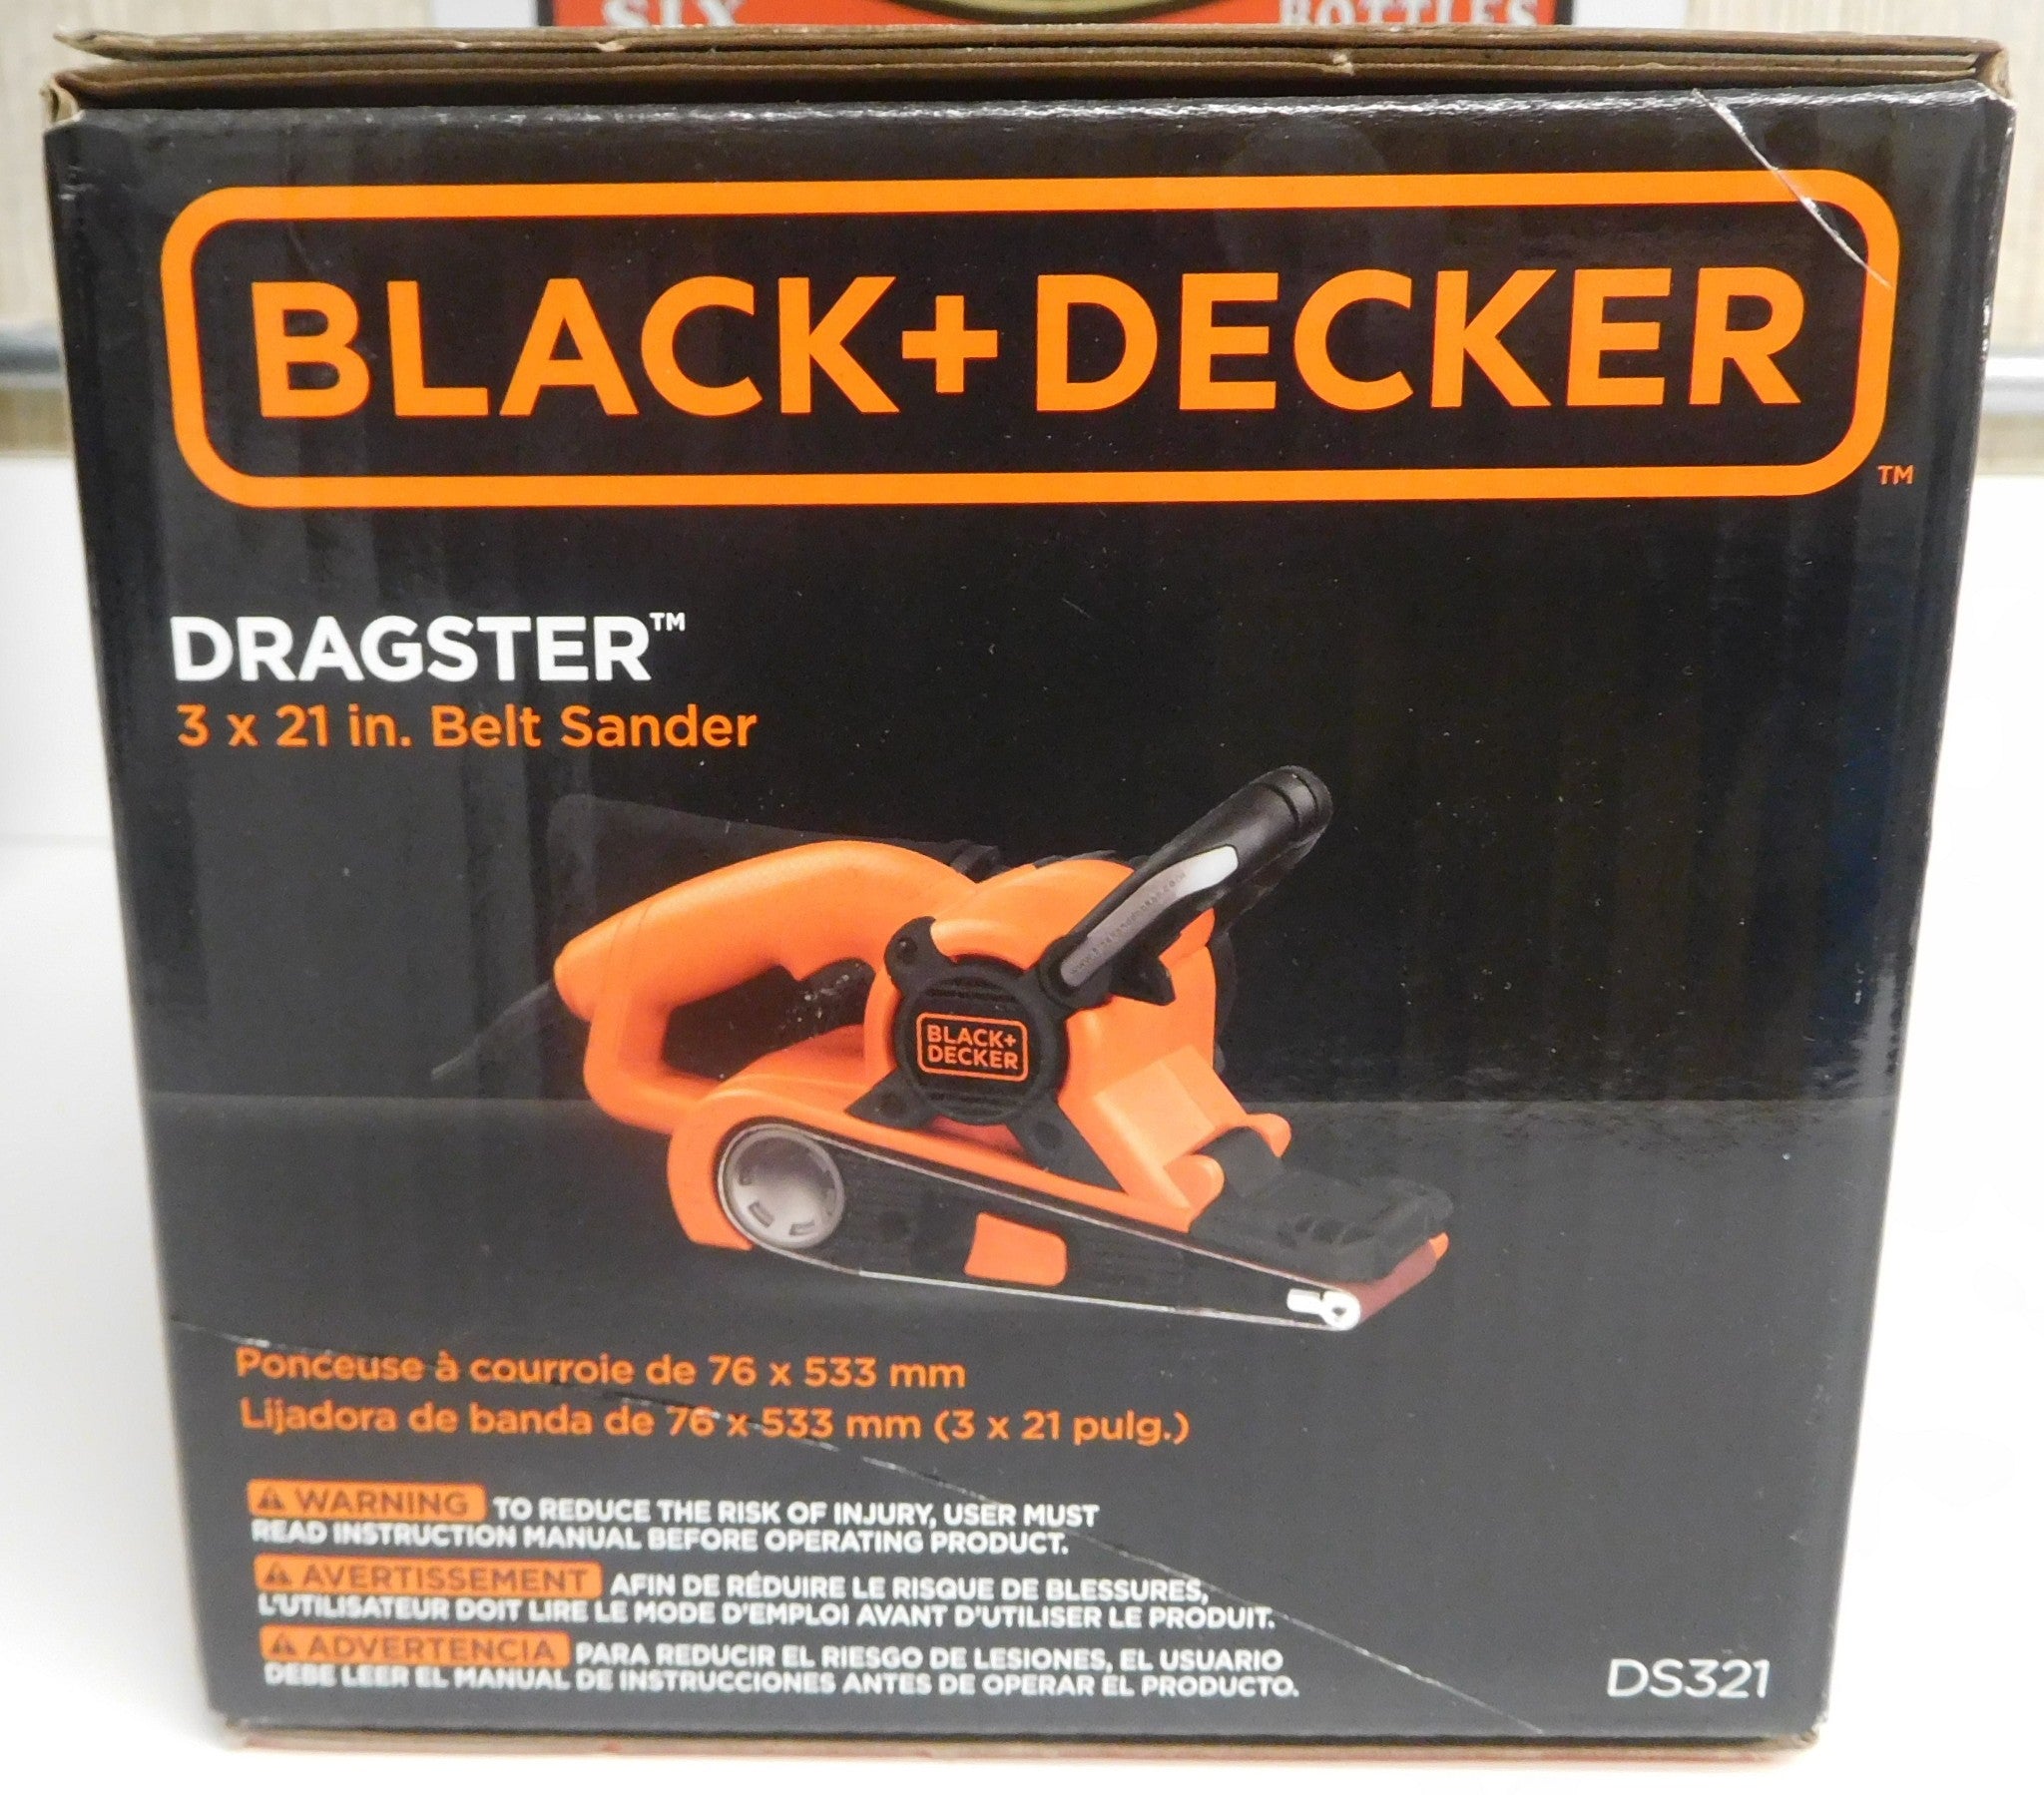 Black+Decker DS321 Dragster 7 Amp 3" x 21" Belt Sander 120 AC